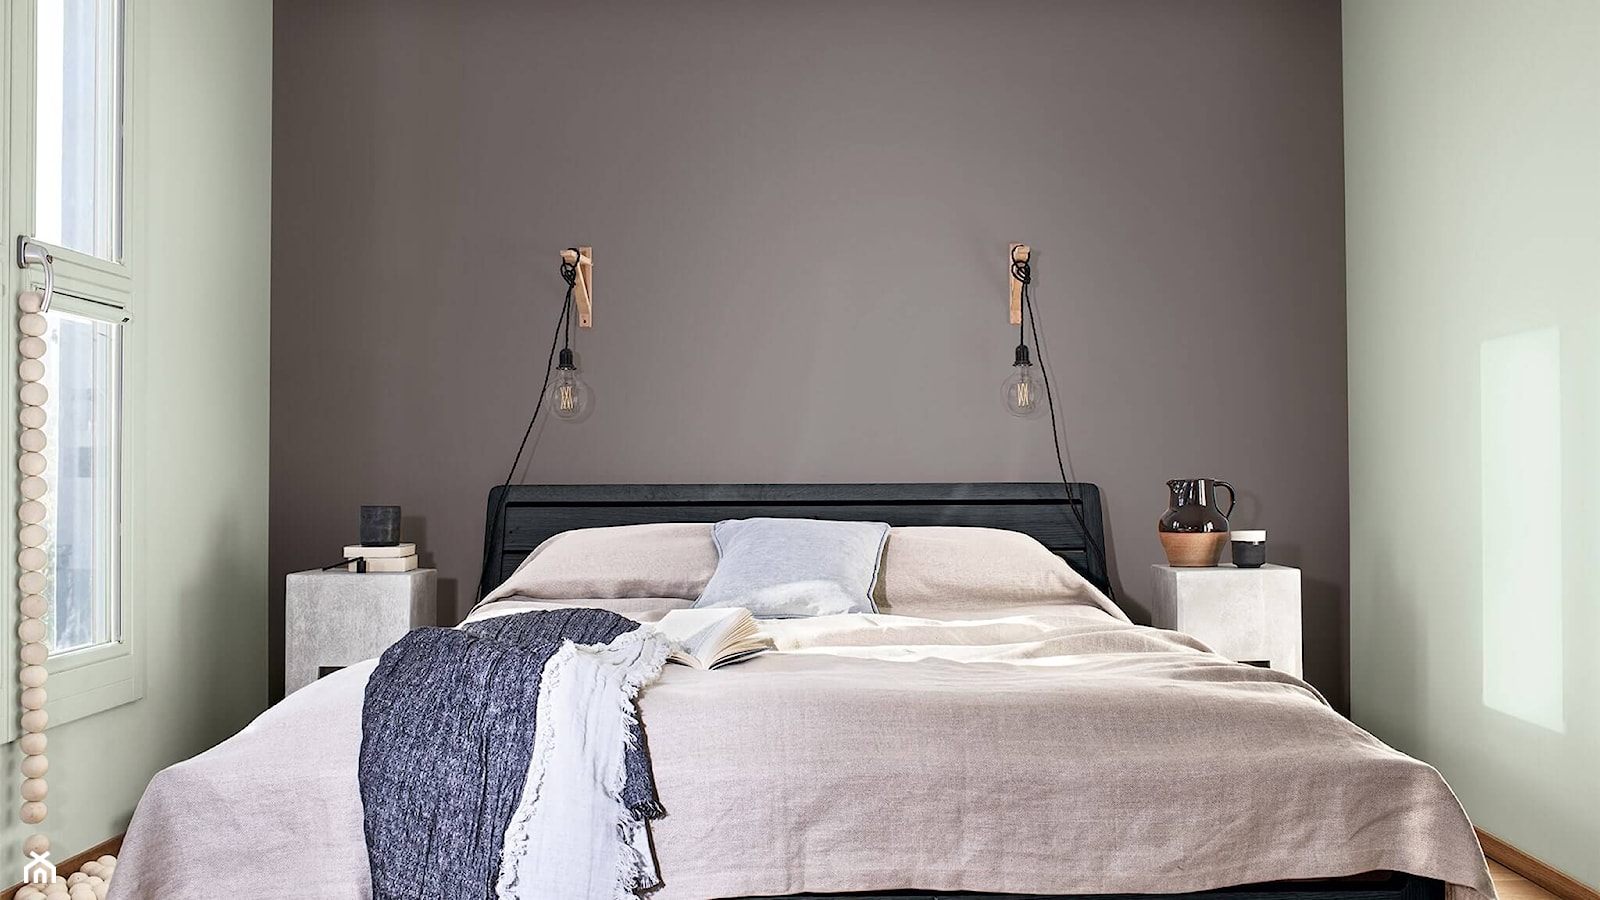 Kolor Roku 2020 - Mała biała szara sypialnia, styl minimalistyczny - zdjęcie od Dulux - Homebook